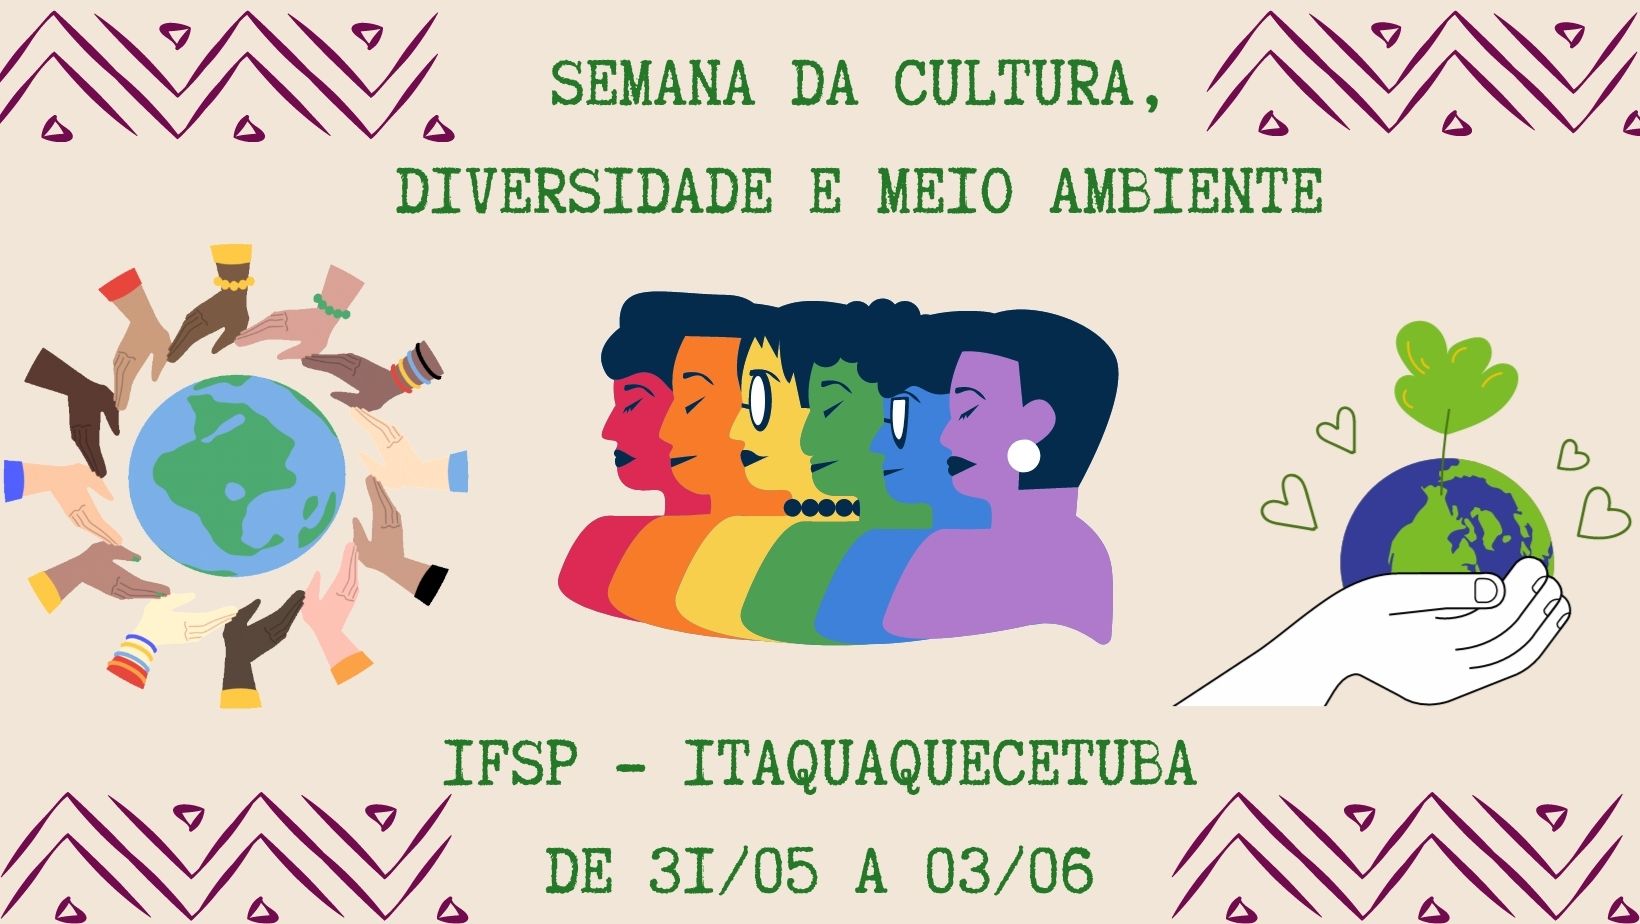 Semana da Cultura, Diversidade e Meio Ambiente do IFSP - Câmpus Itaquaquecetuba: De 31/05 a 03/06